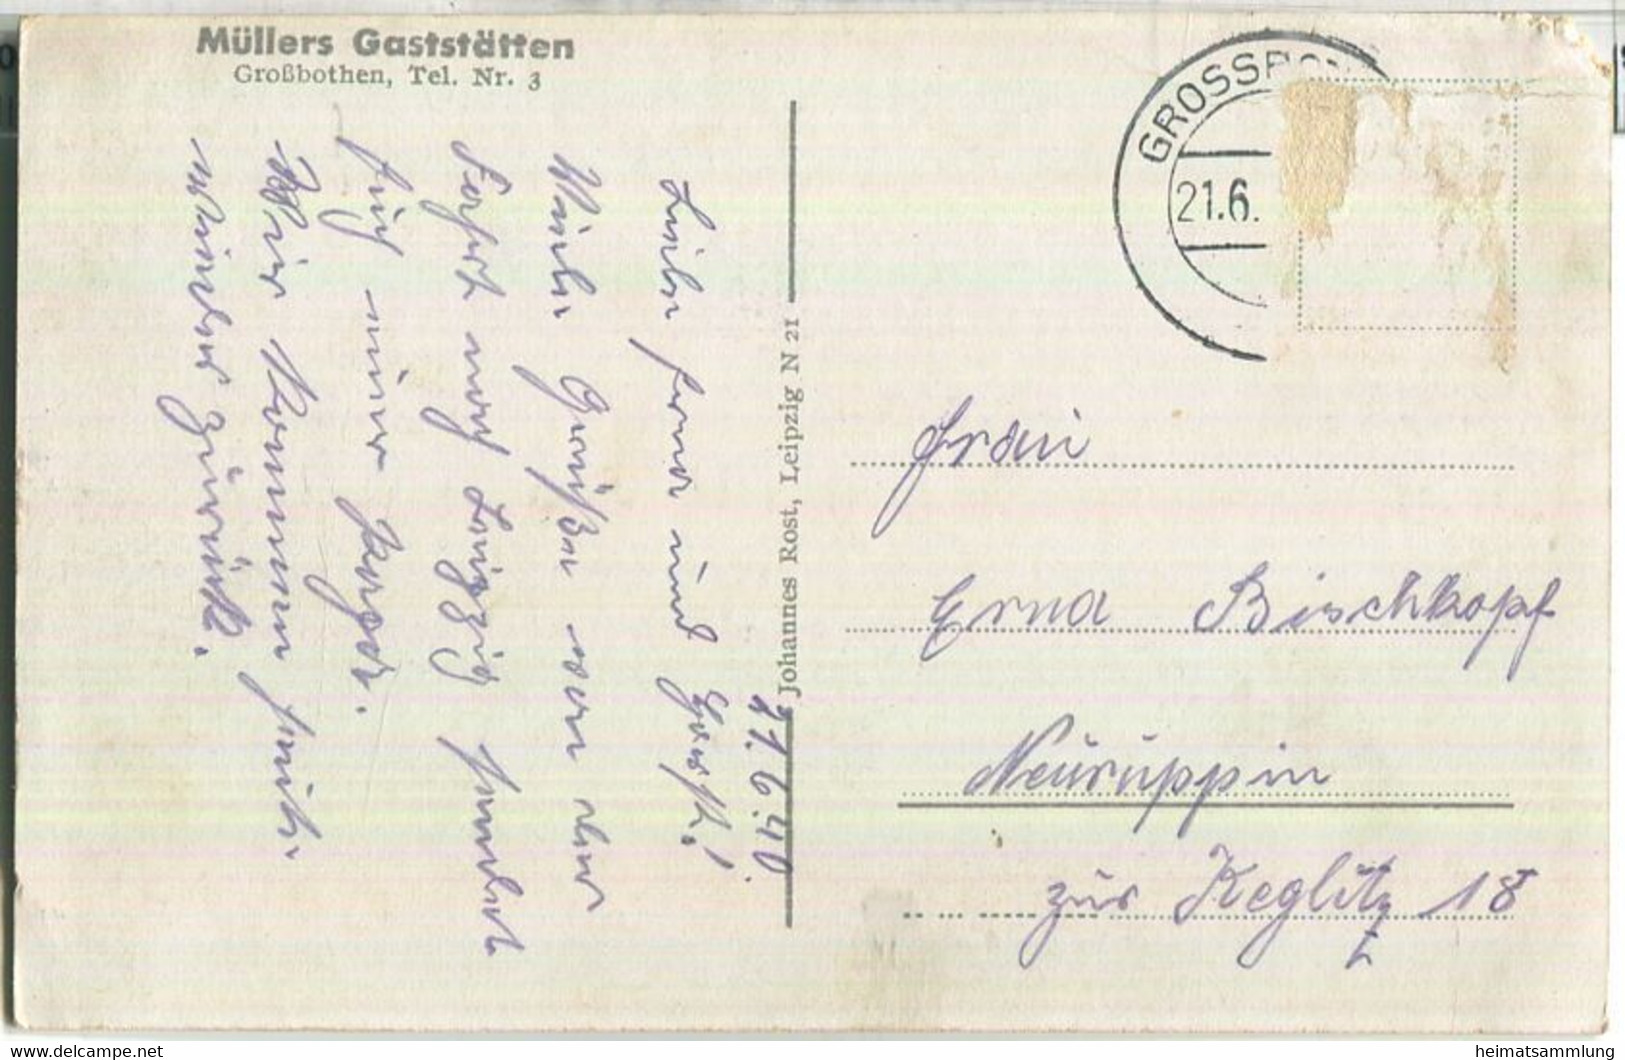 Grimma - Grossbothen - Müllers Gaststätten - Verlag Johannes Rost Leipzig - Grimma